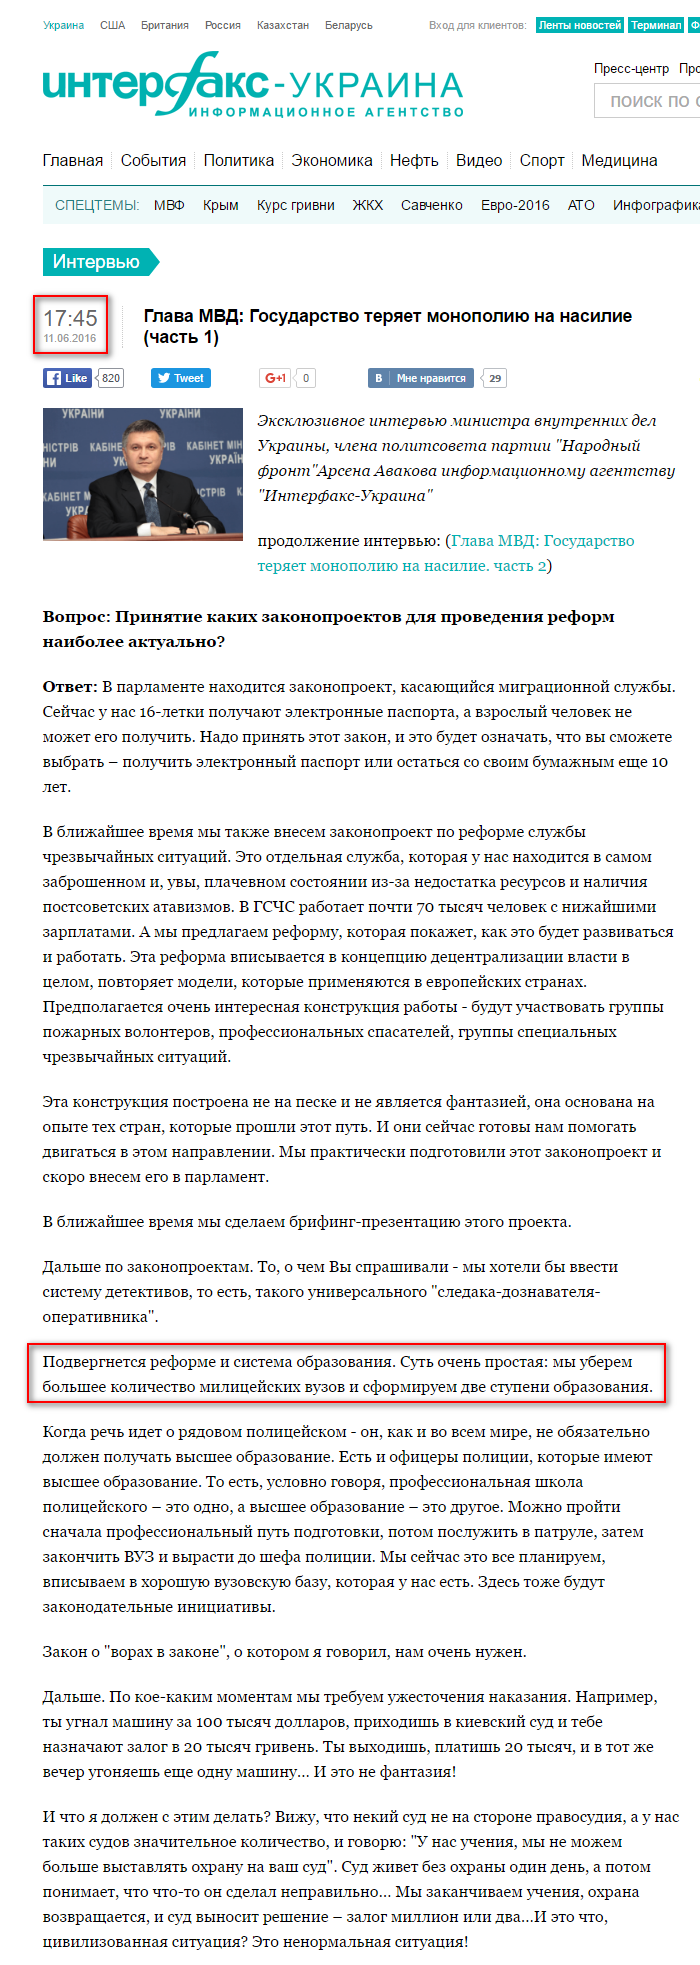 http://interfax.com.ua/news/interview/349567.html